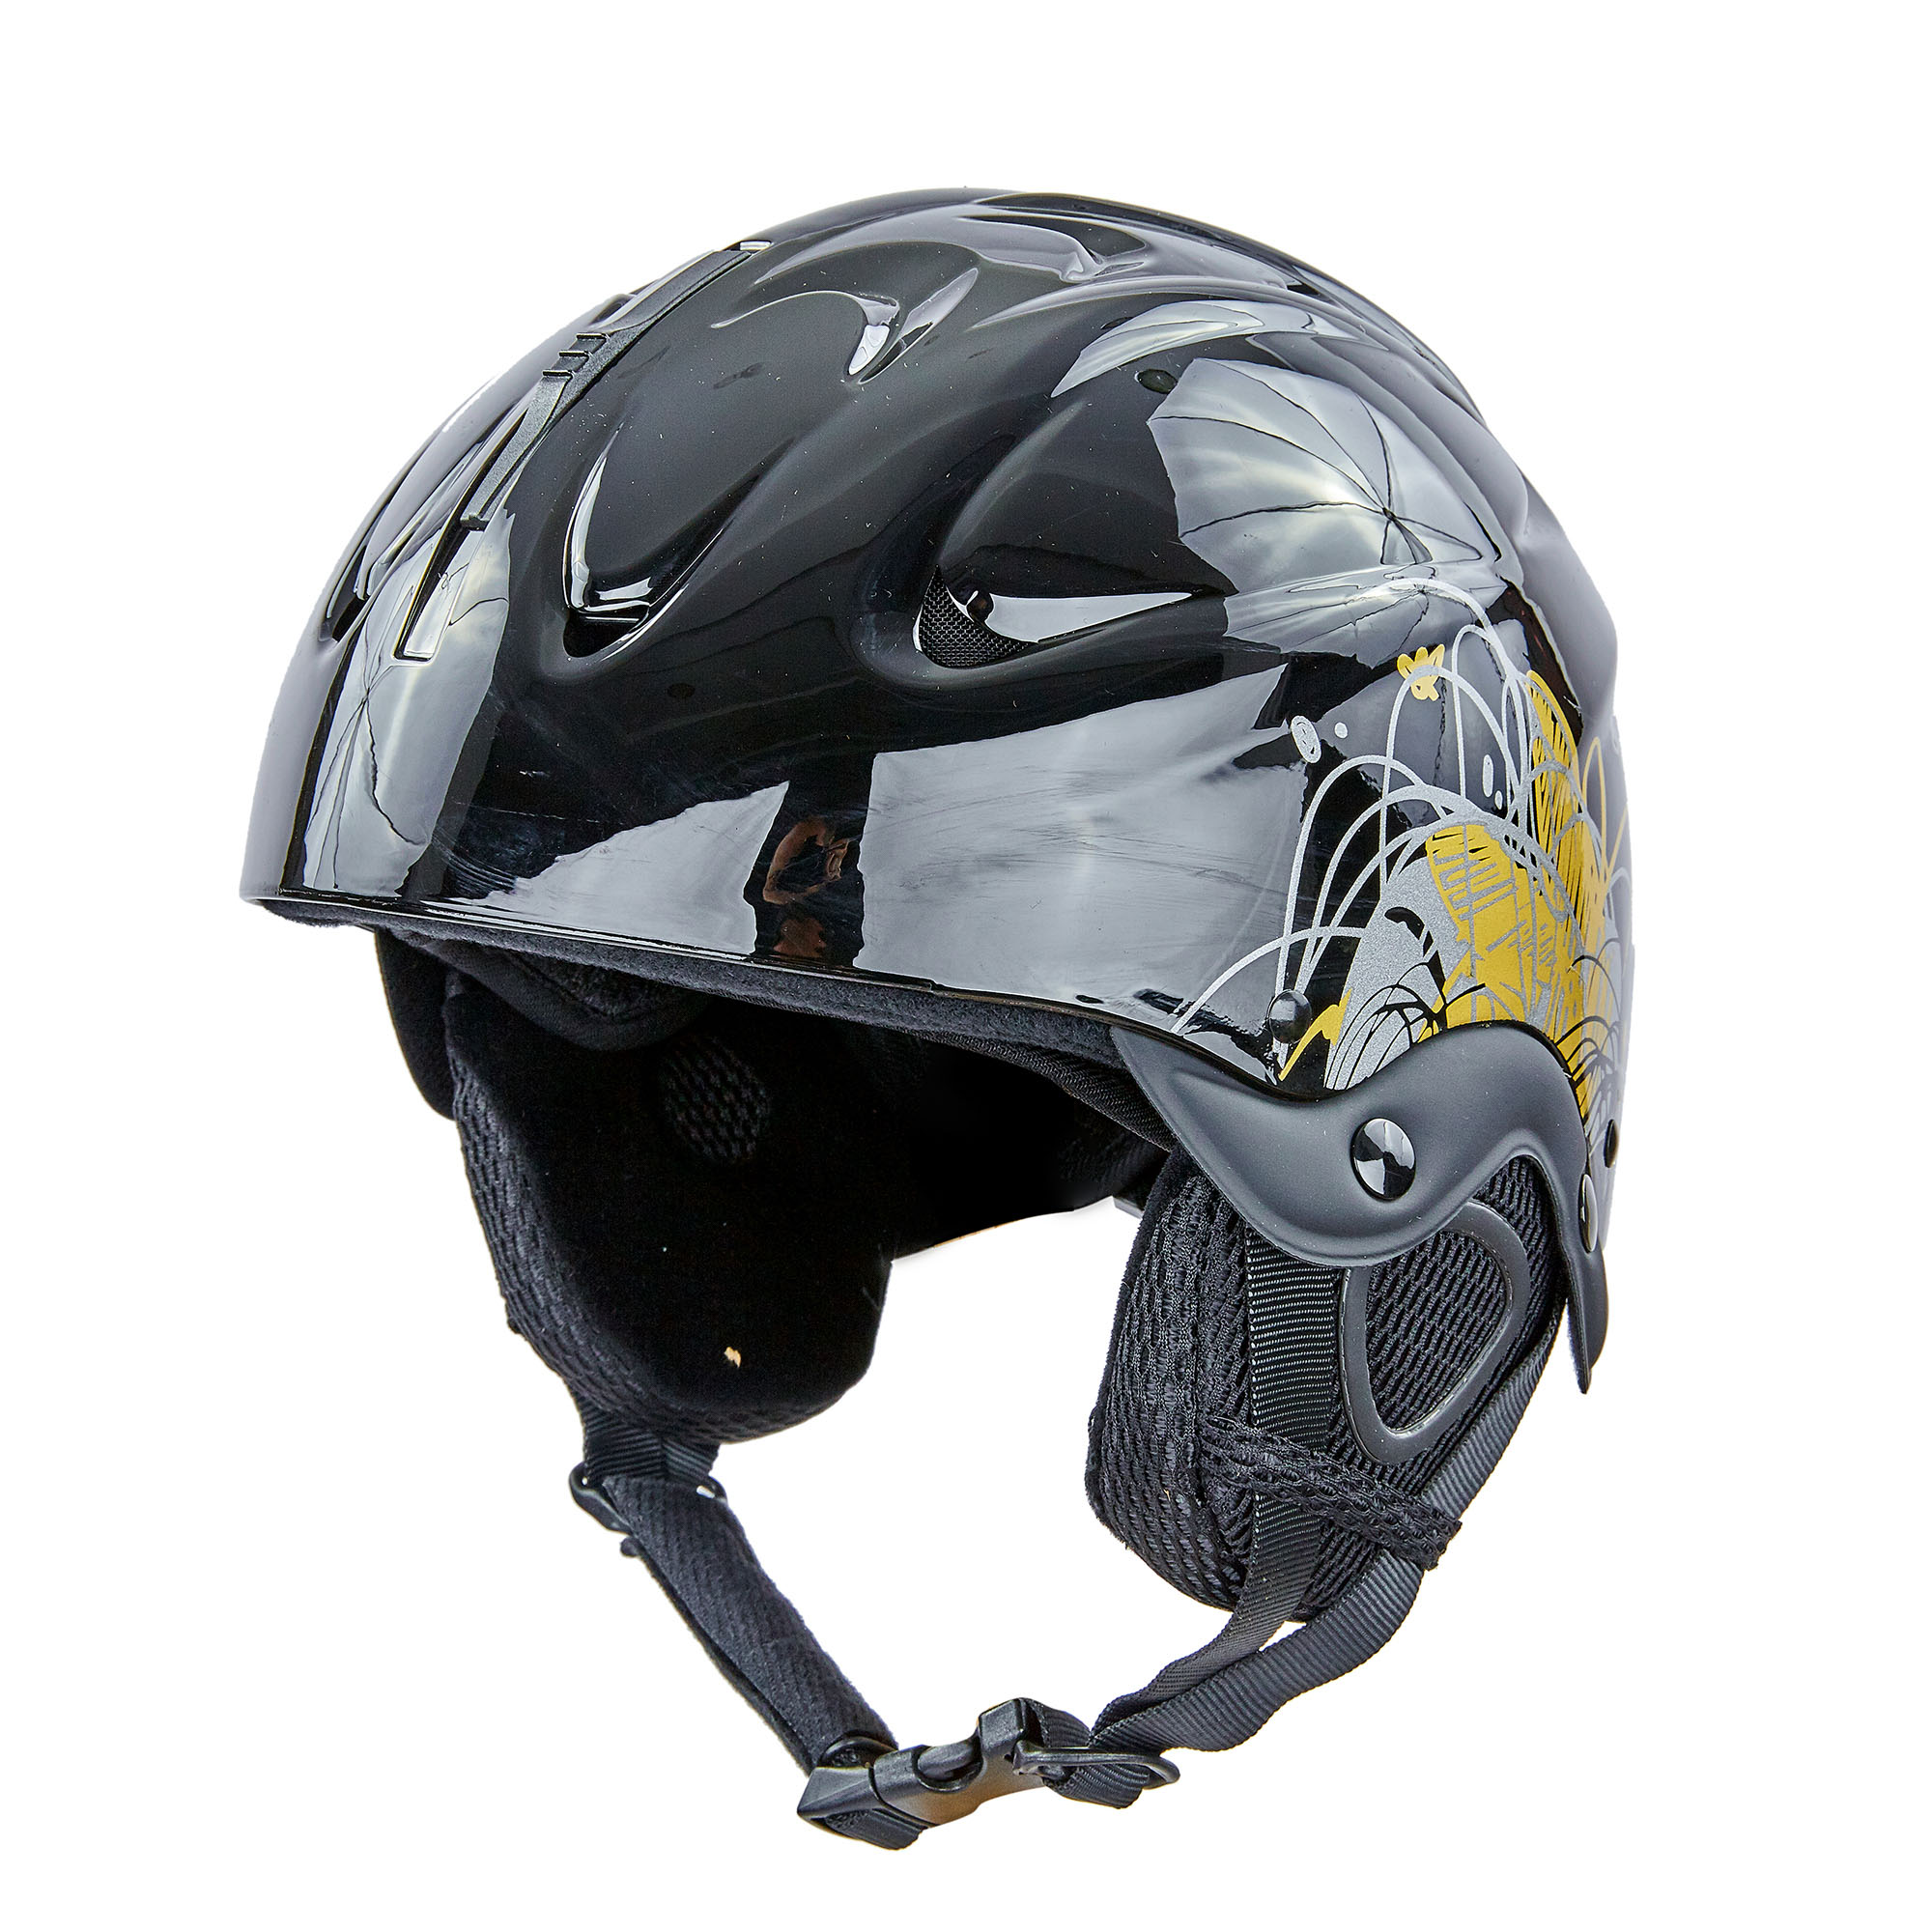 Шлем горнолыжный с механизмом регулировки MOON MS-2947-S ABS p-p S-53-55 Черный-золотой